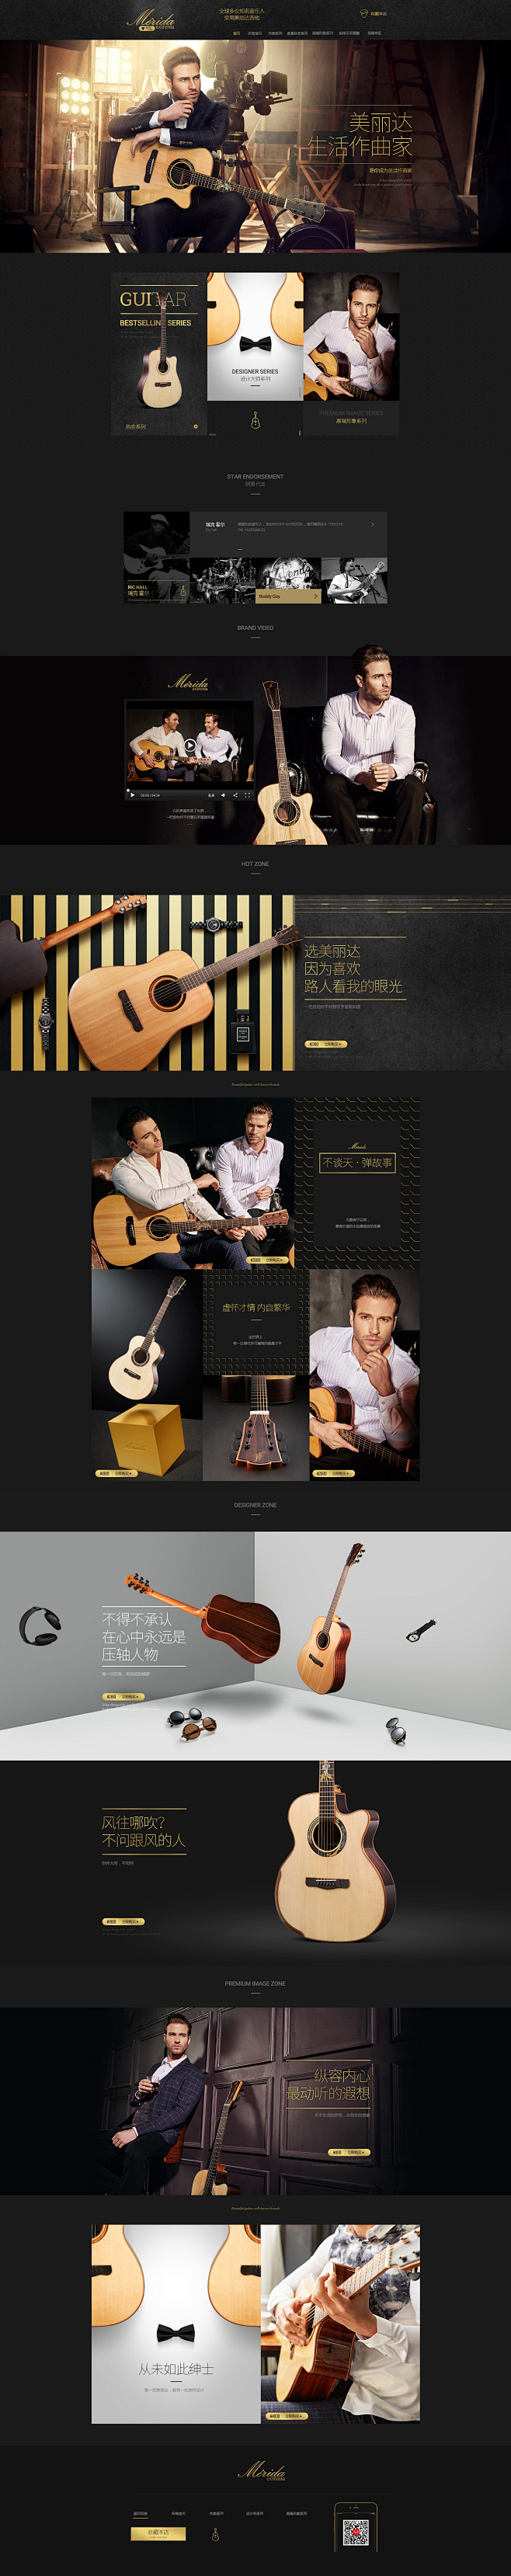 音乐吉他乐器天猫首页活动页面设计 mer...